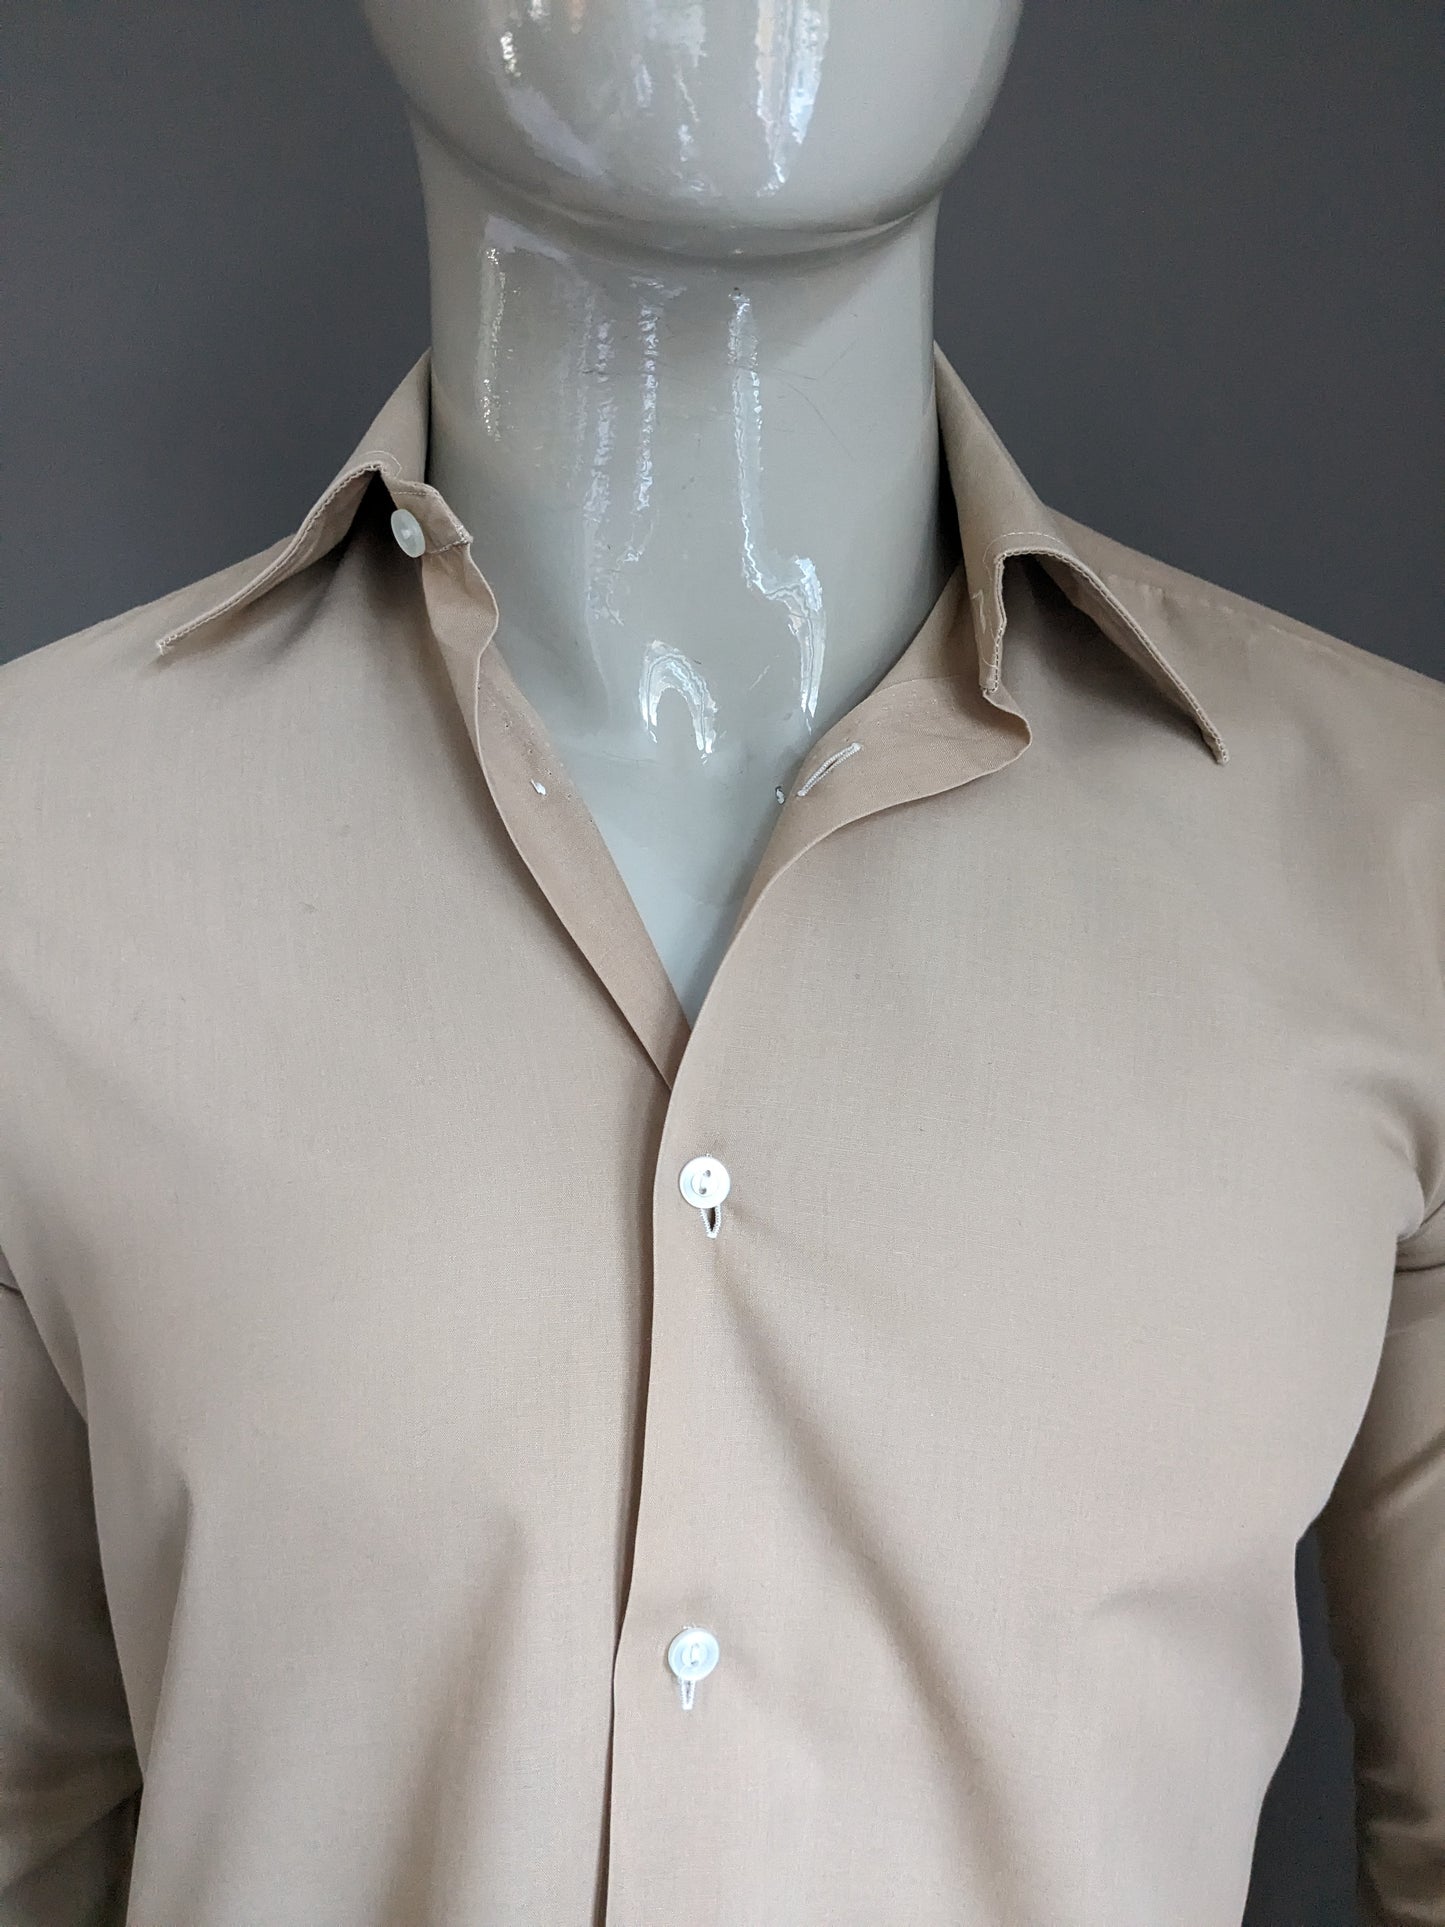 Vintage Tootal 70's overhemd met puntkraag. Licht Bruin gekleurd. Maat M.